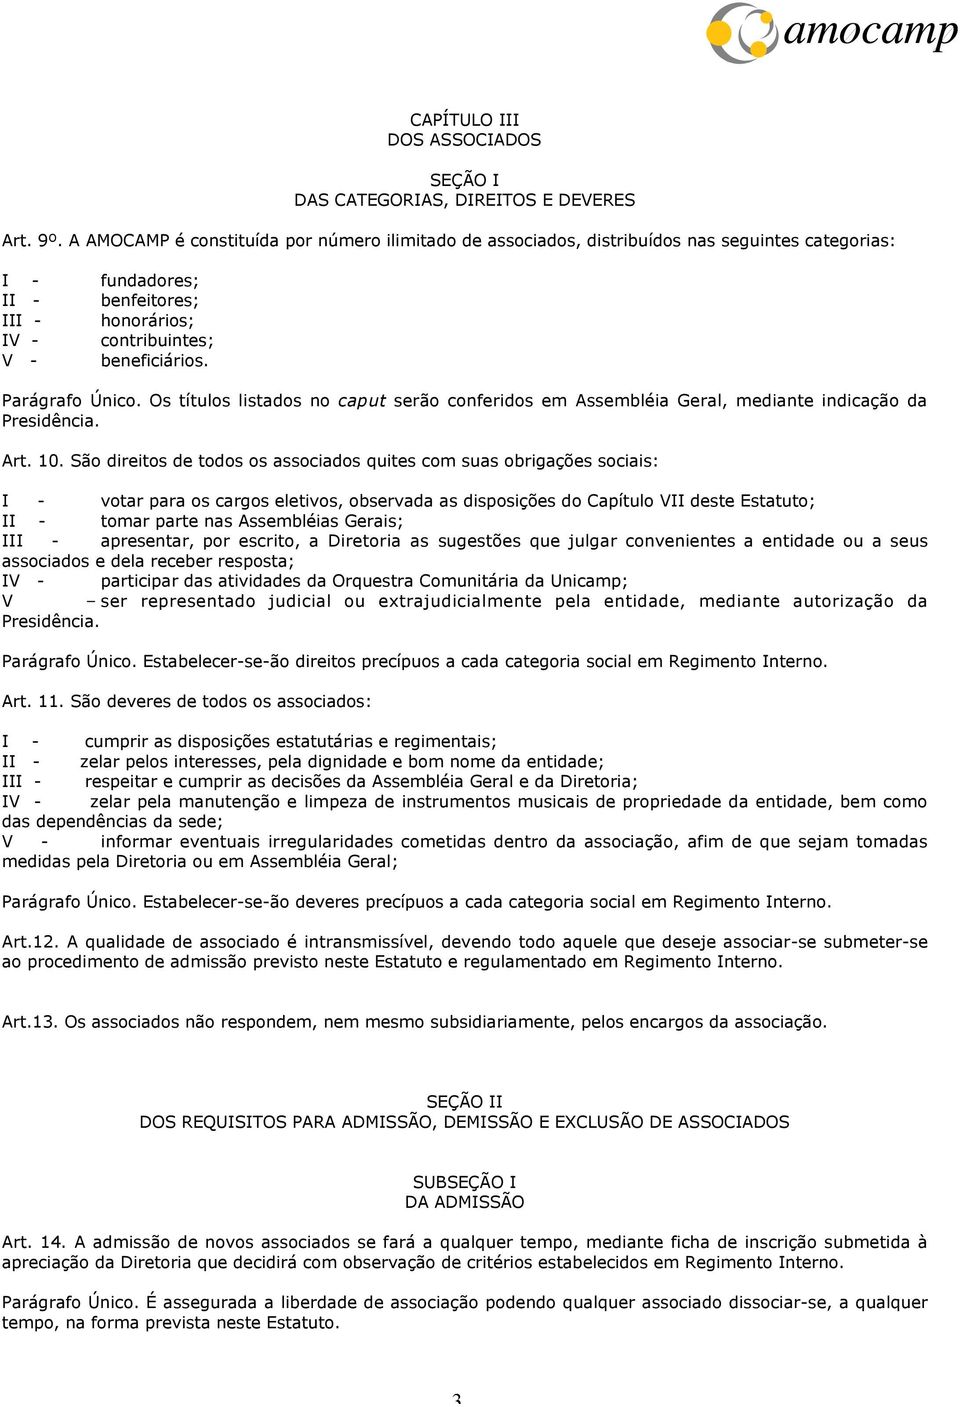 Os títulos listados no caput serão conferidos em Assembléia Geral, mediante indicação da Presidência. Art. 10.